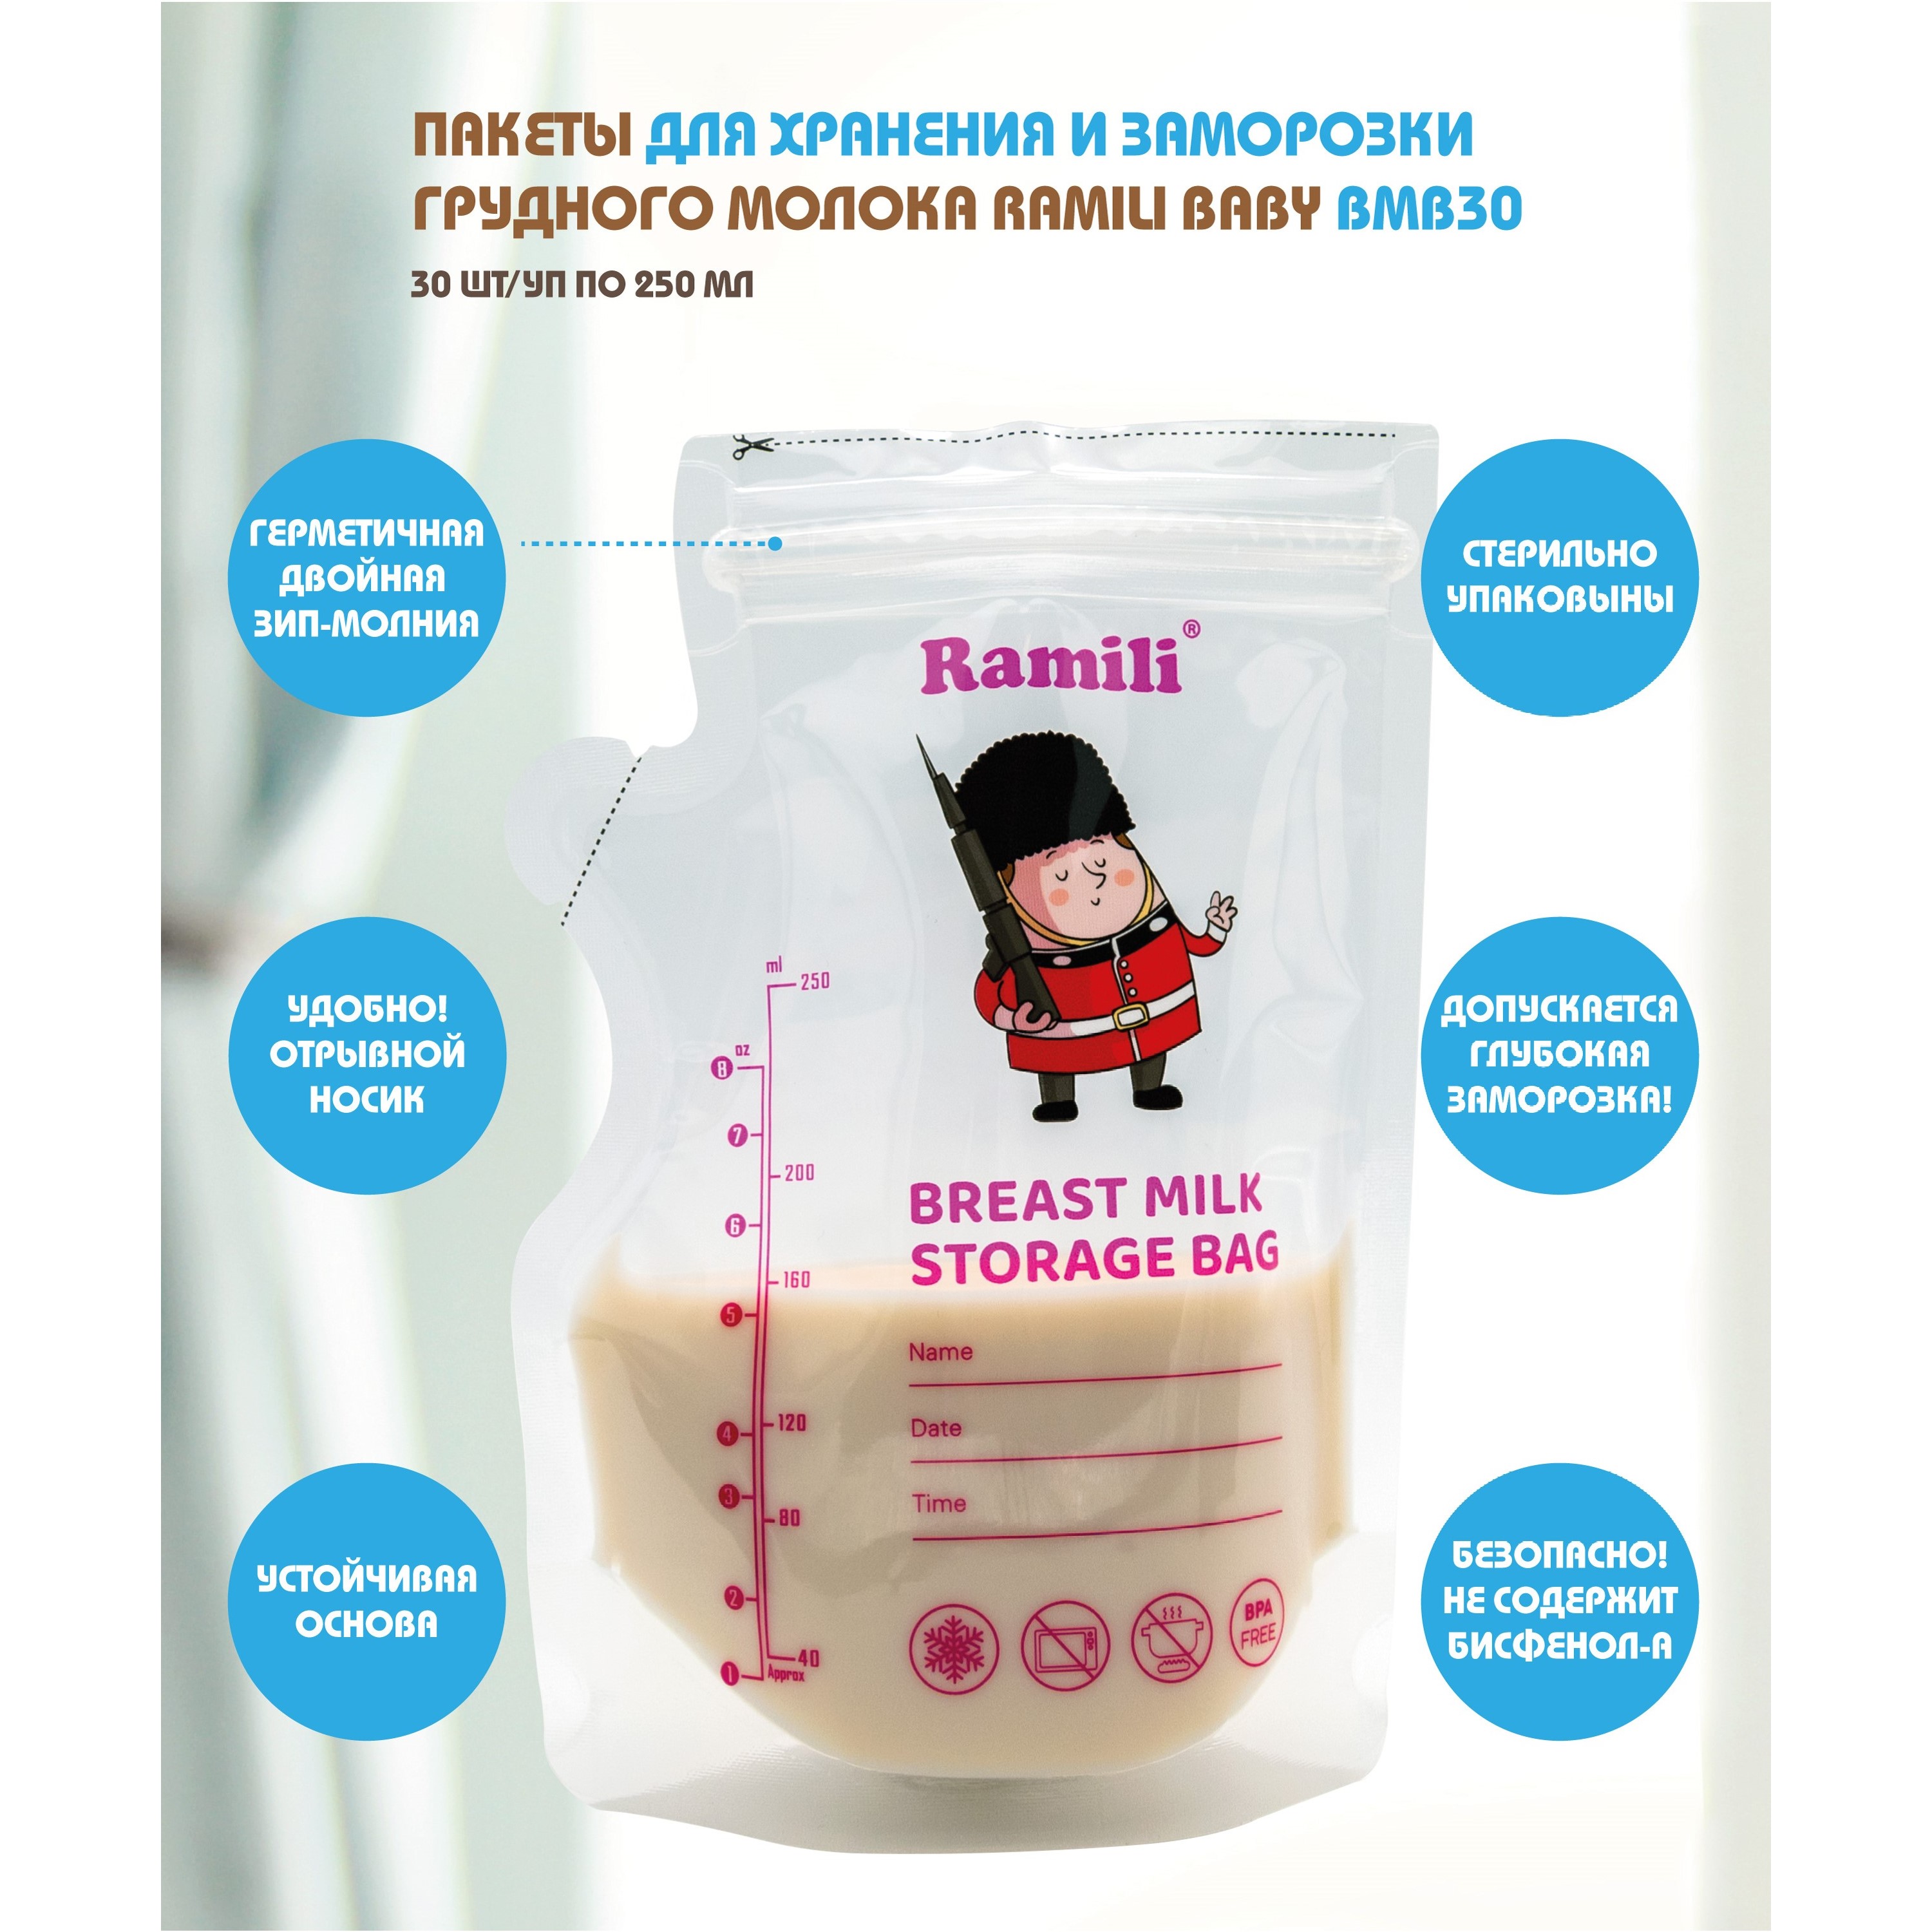 Пакеты для хранения и заморозки грудного молока Ramili Baby BMB30 ardo пакеты для хранения грудного молока ardo easy store 25 шт